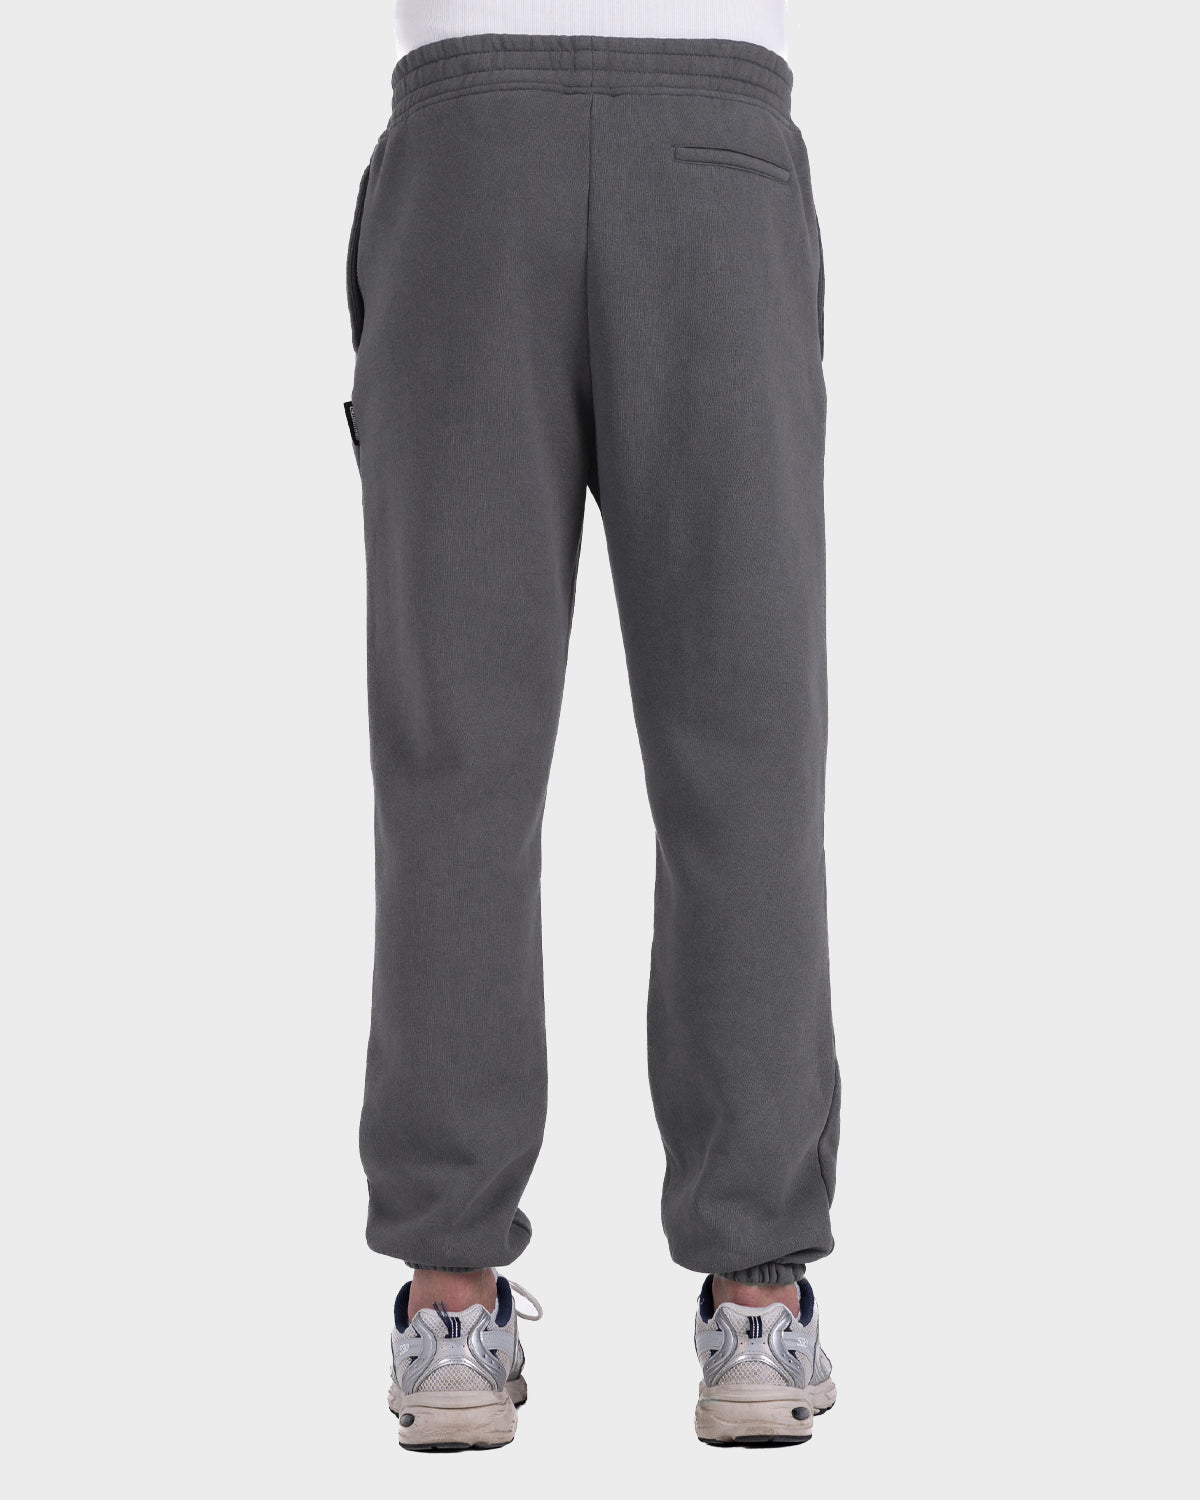 – Prohibited Grey Washed) Sweatpants (Stone